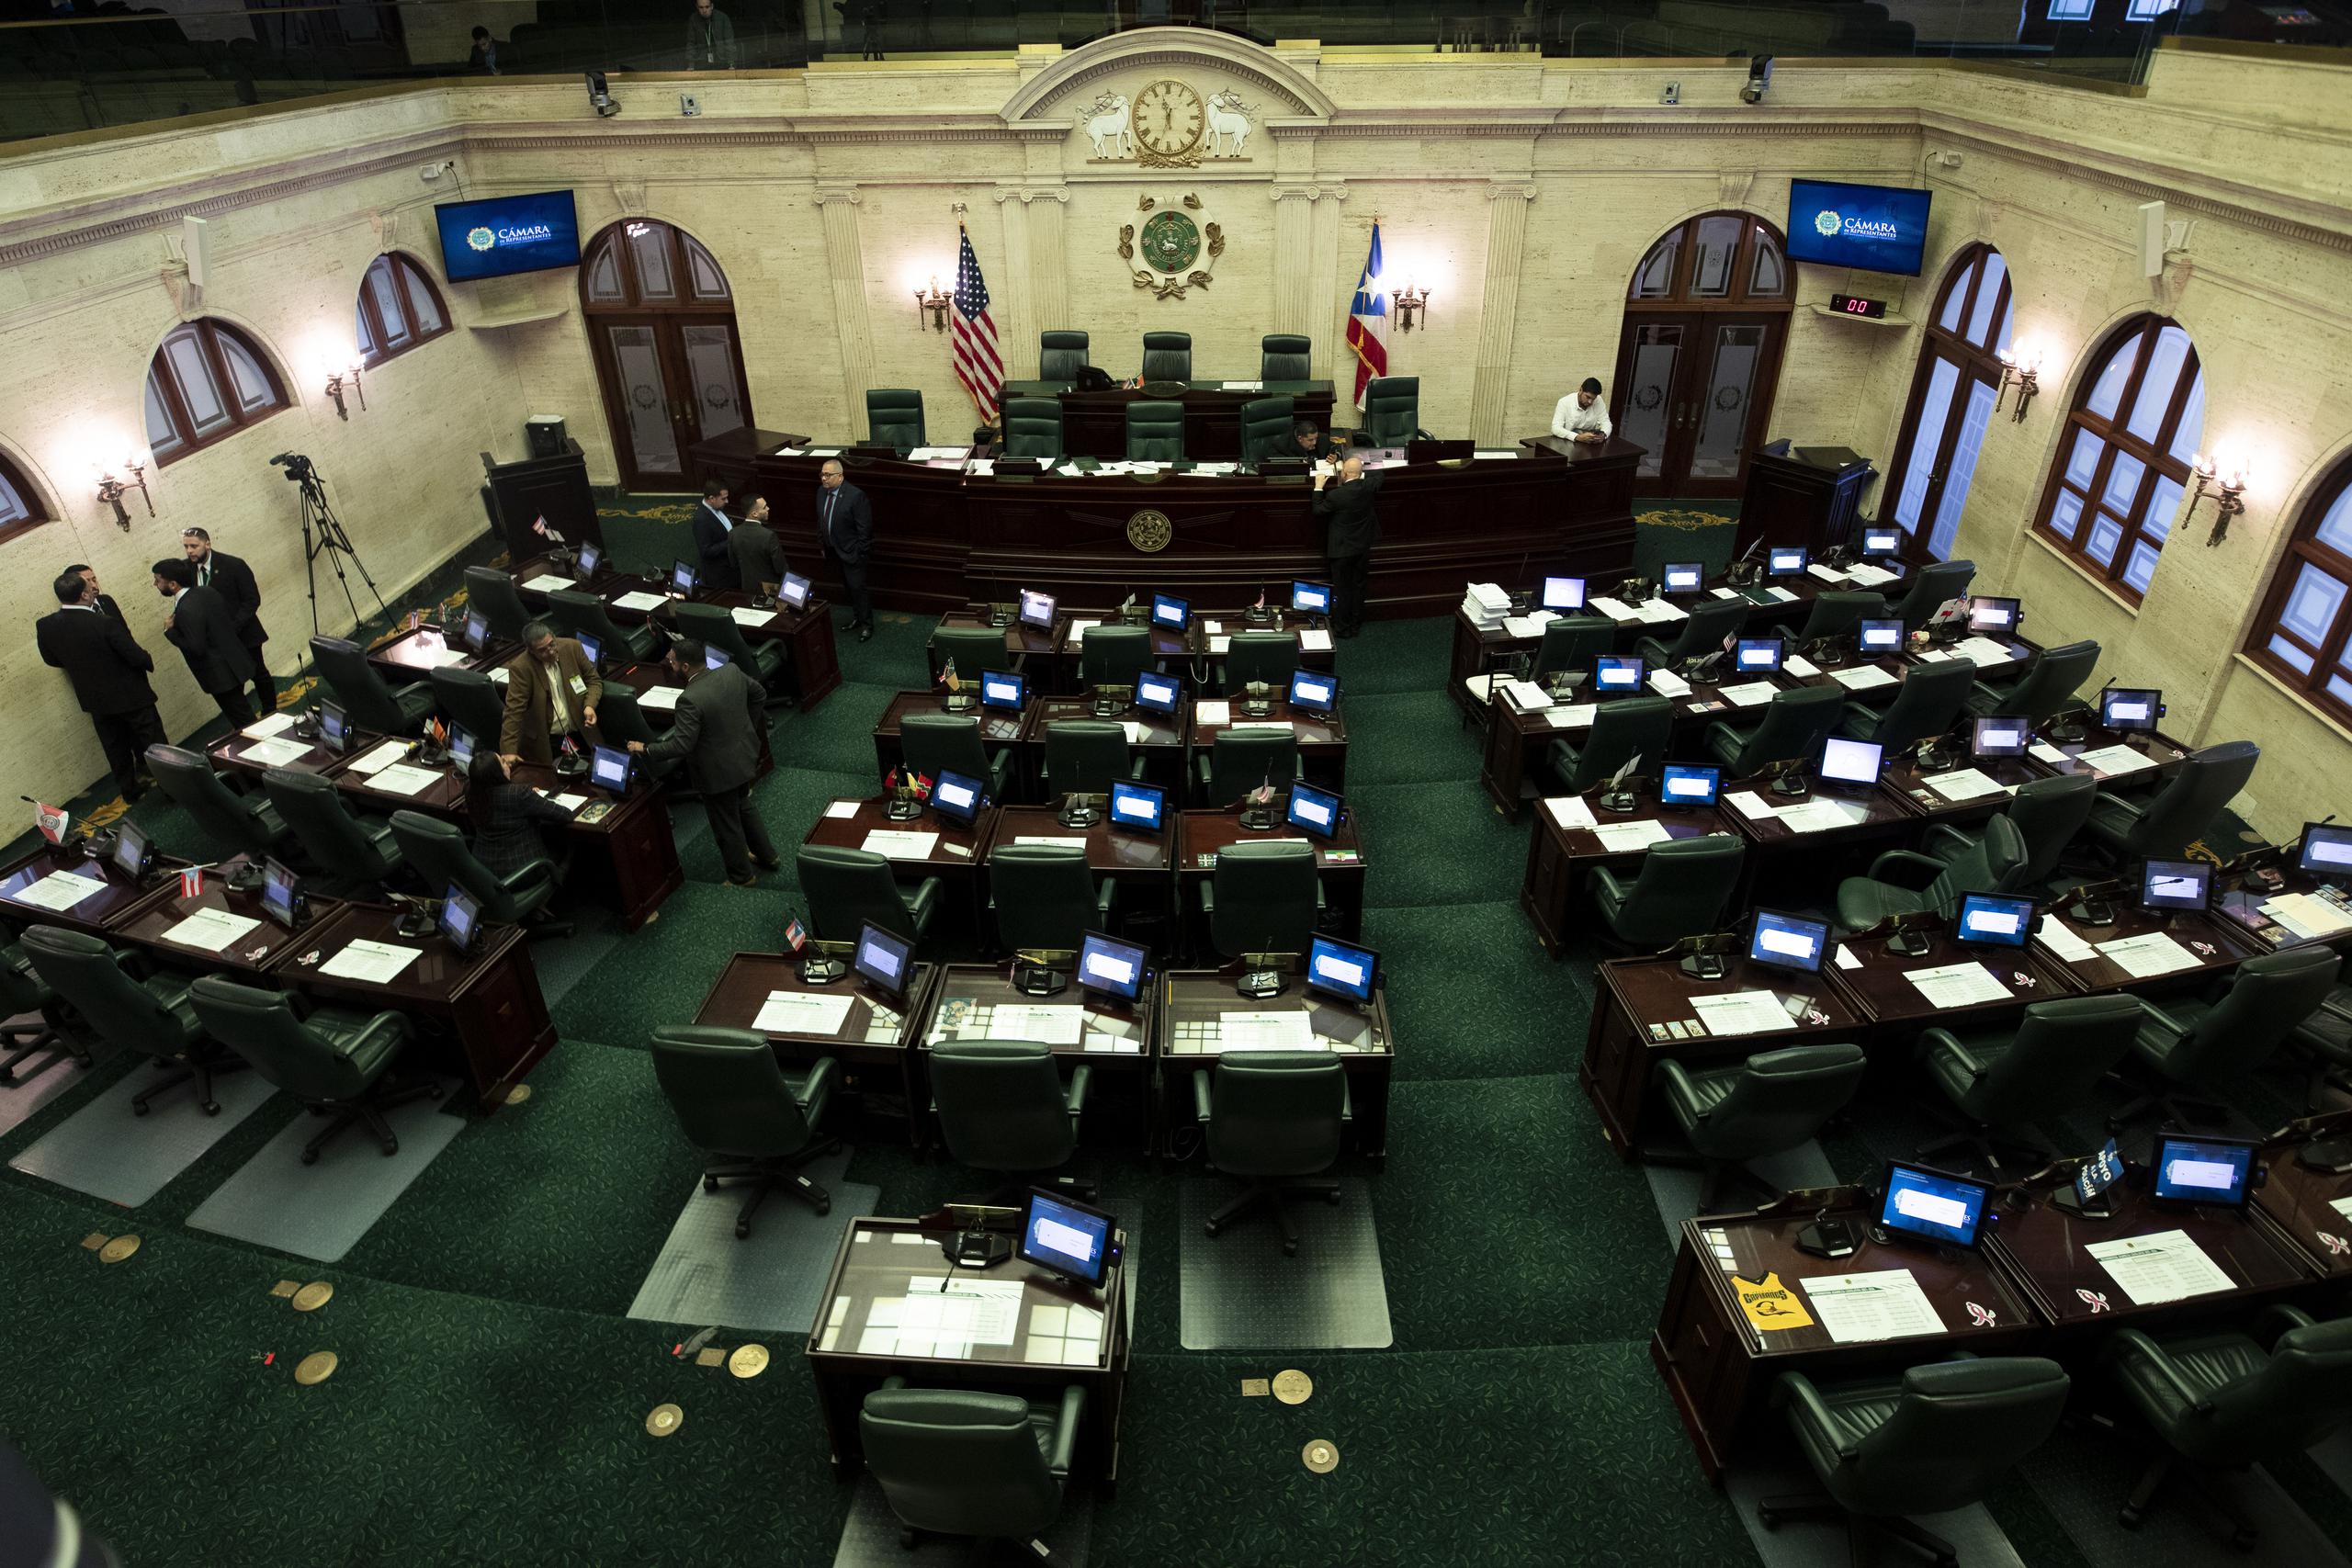 La Cámara de Representantes introdujo unas enmiendas y el Proyecto del Senado 1142 pasó a comité de conferencia, a la espera de votación final. Fotos por Nahira Montcourt.